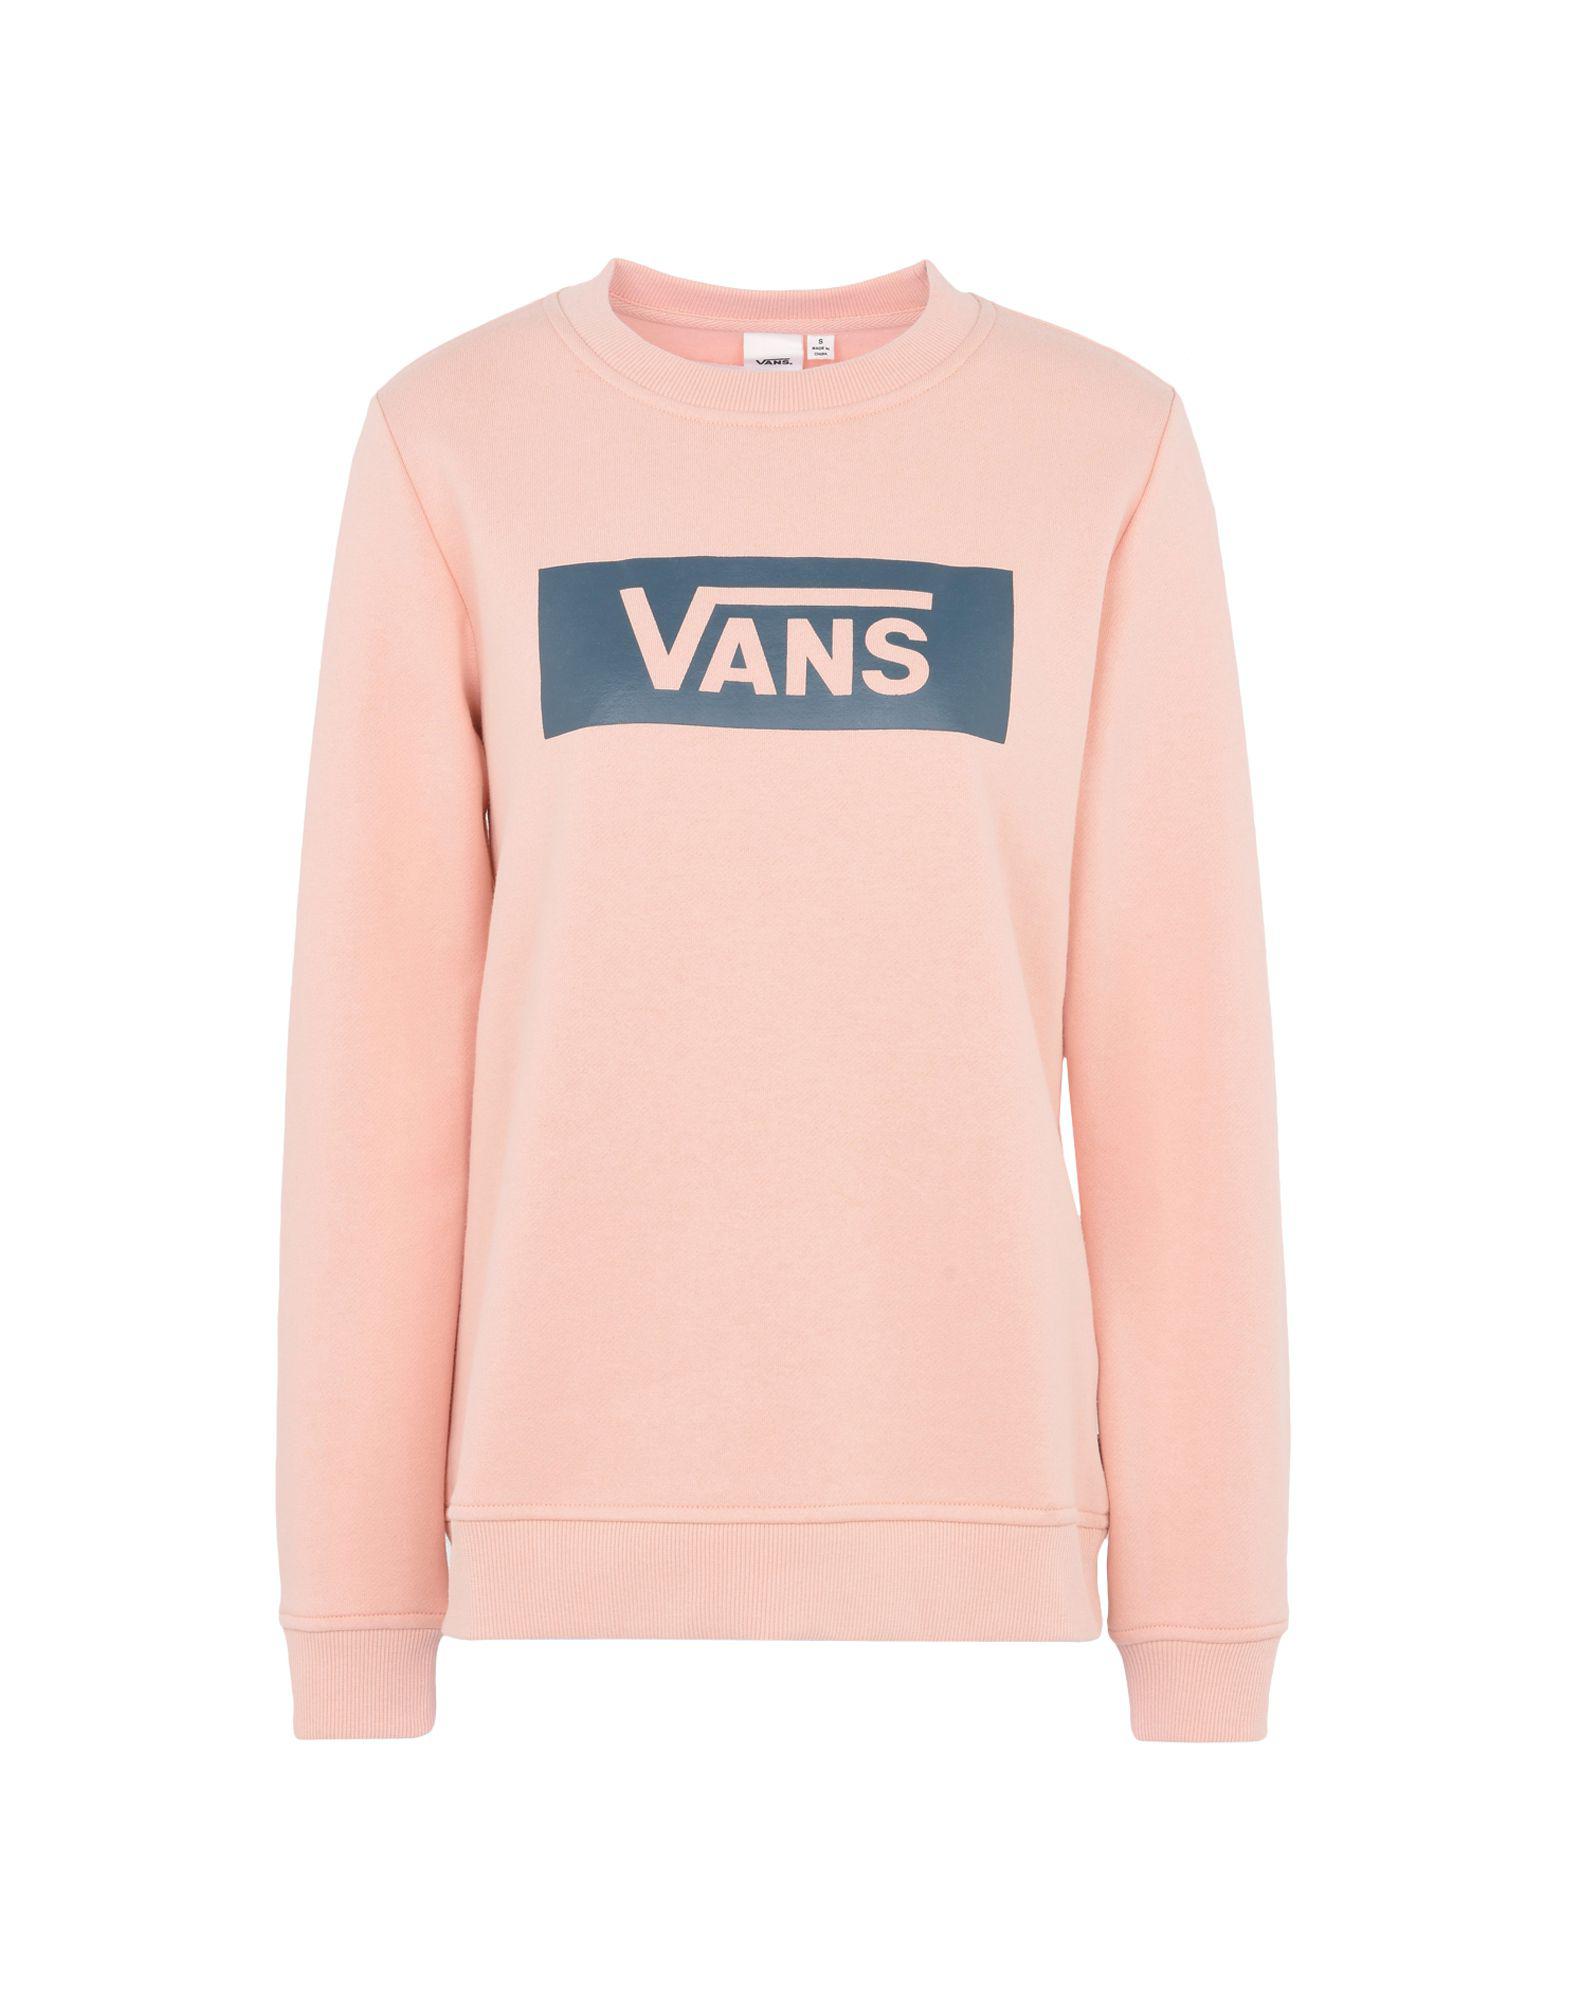 vans sweatshirt pink